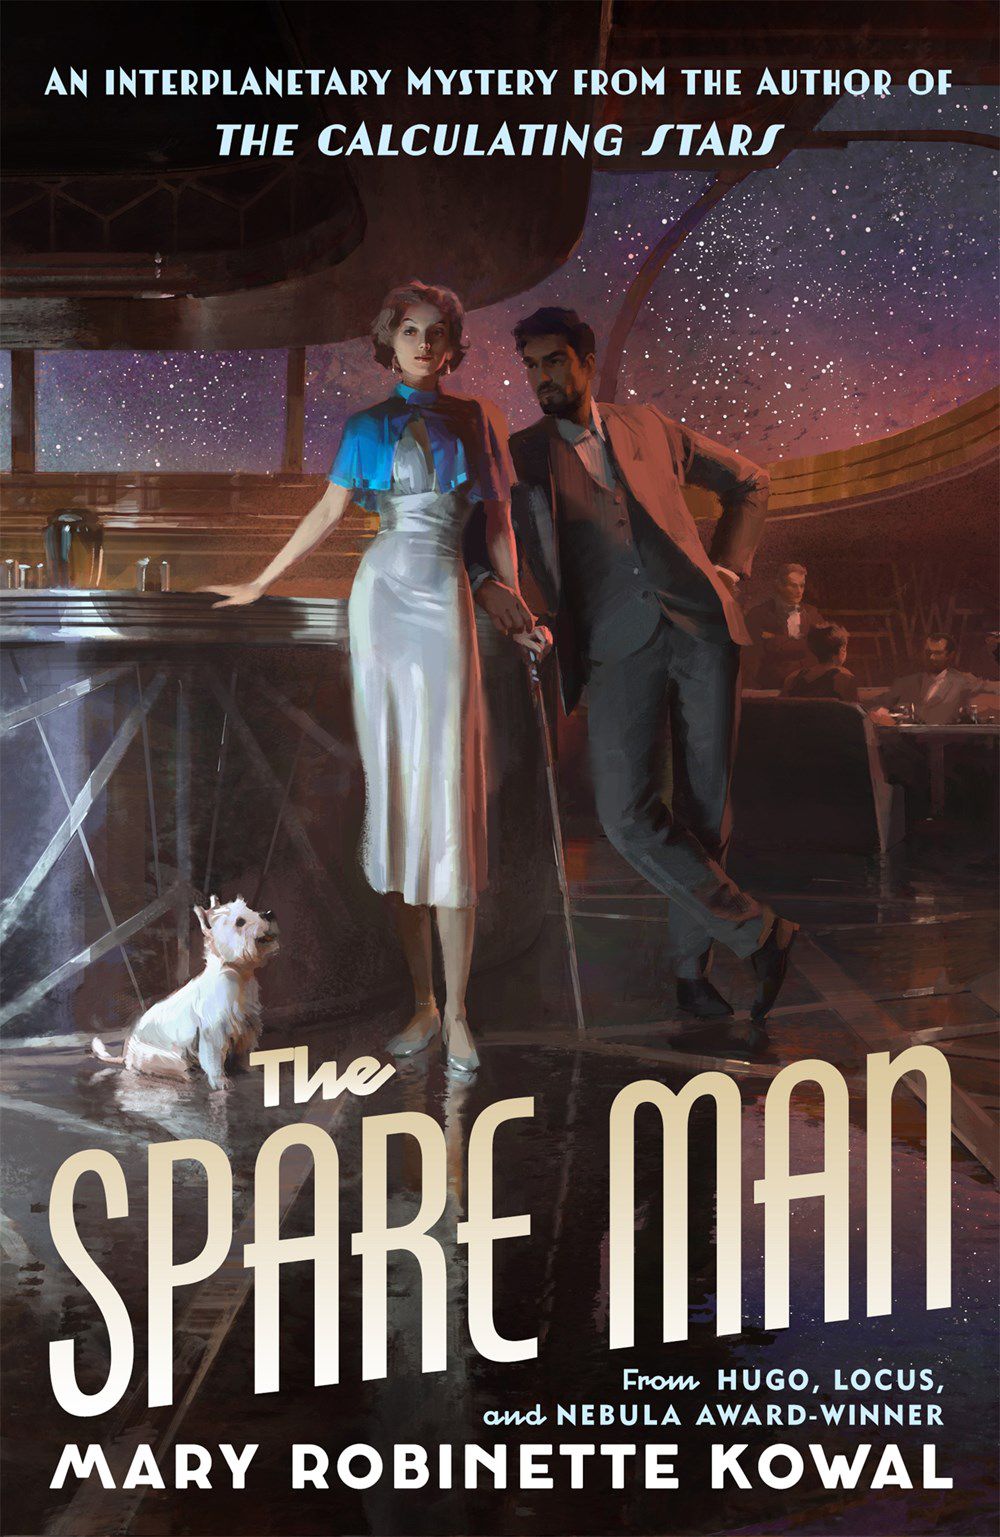 Immagine di copertina per The Spare Man di Mary Robinette Kowal, con due figure in piedi davanti a un bar con un cane seduto accanto a loro